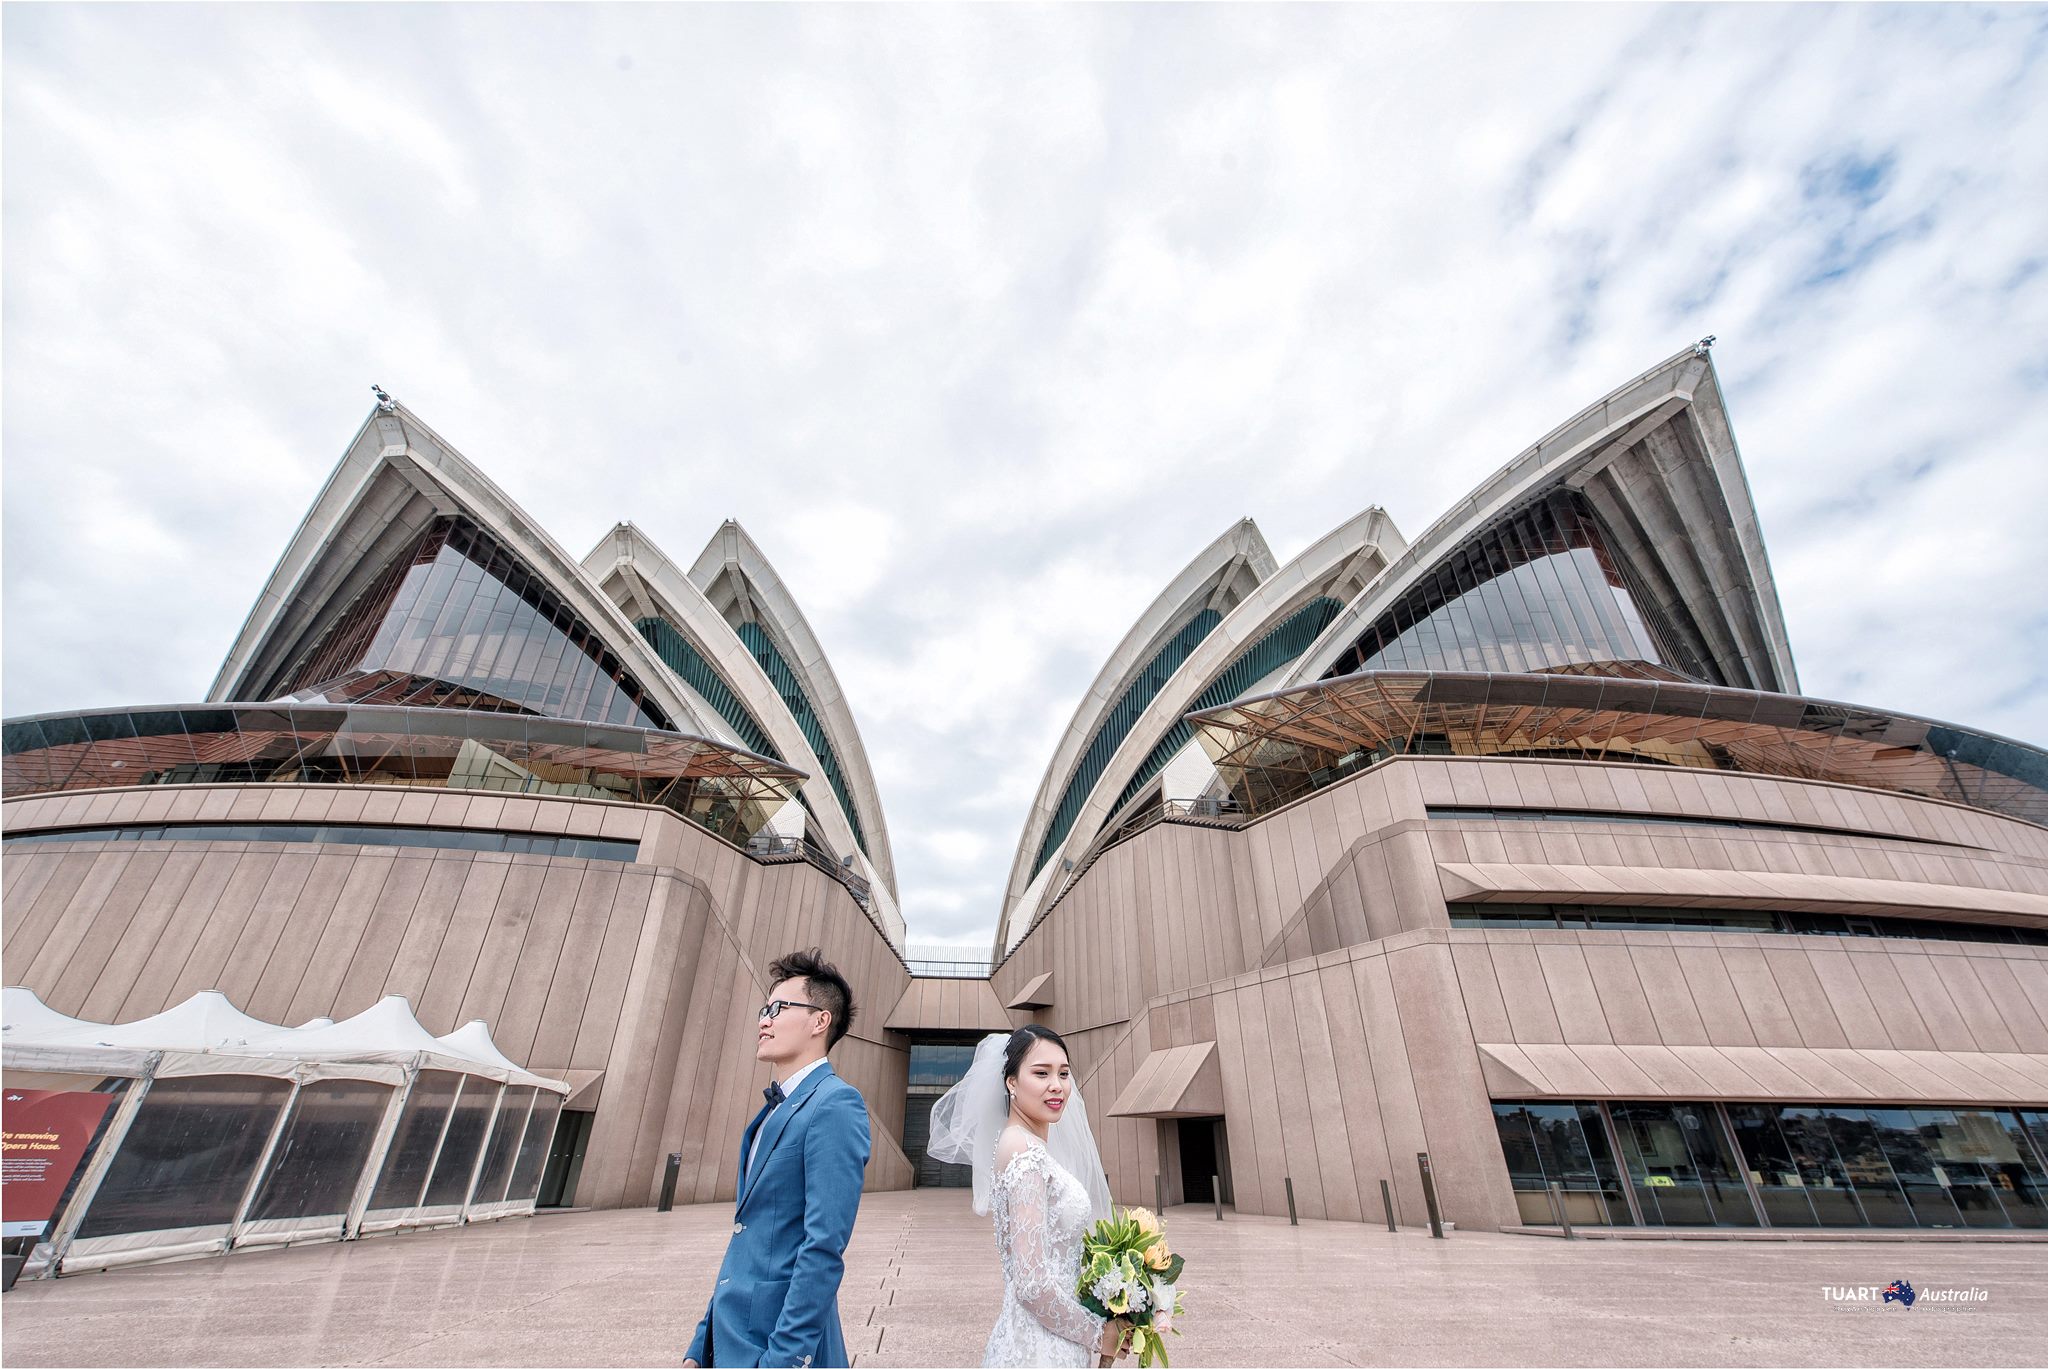 Album chụp ảnh cưới đẹp tại Úc: Huy An-Lan Anh 16